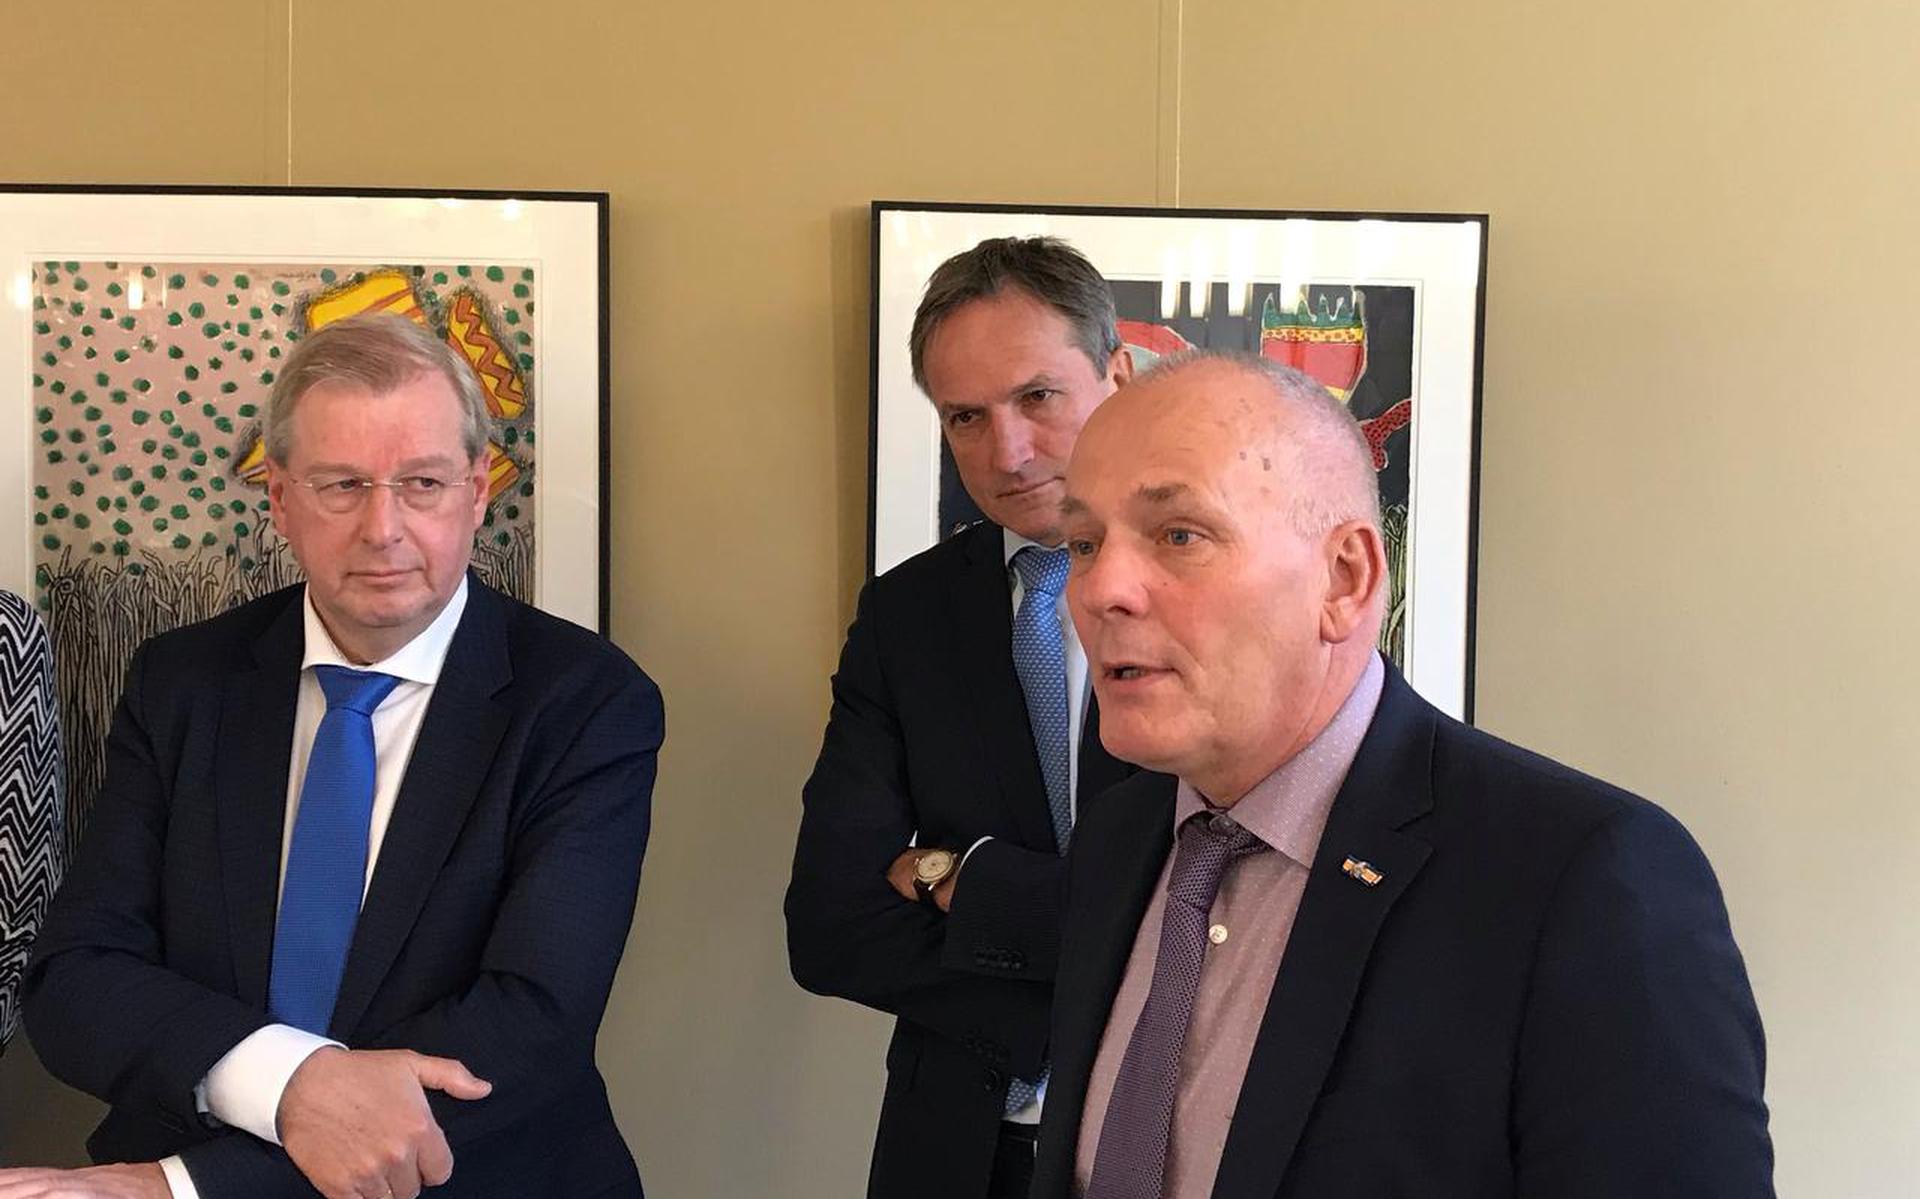 Tjisse Stelpstra, Sandor Gaastra en Henk Brink (v.l.n.r.) tijdens de bijeenkomst op het provinciehuis in Assen. Foto: DvhN

